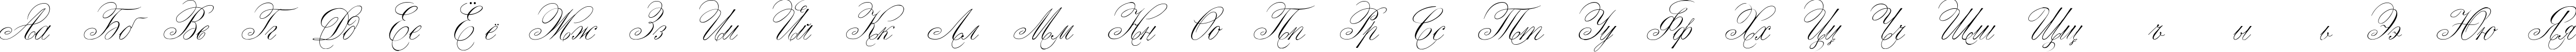 Пример написания русского алфавита шрифтом Script Thin Pen